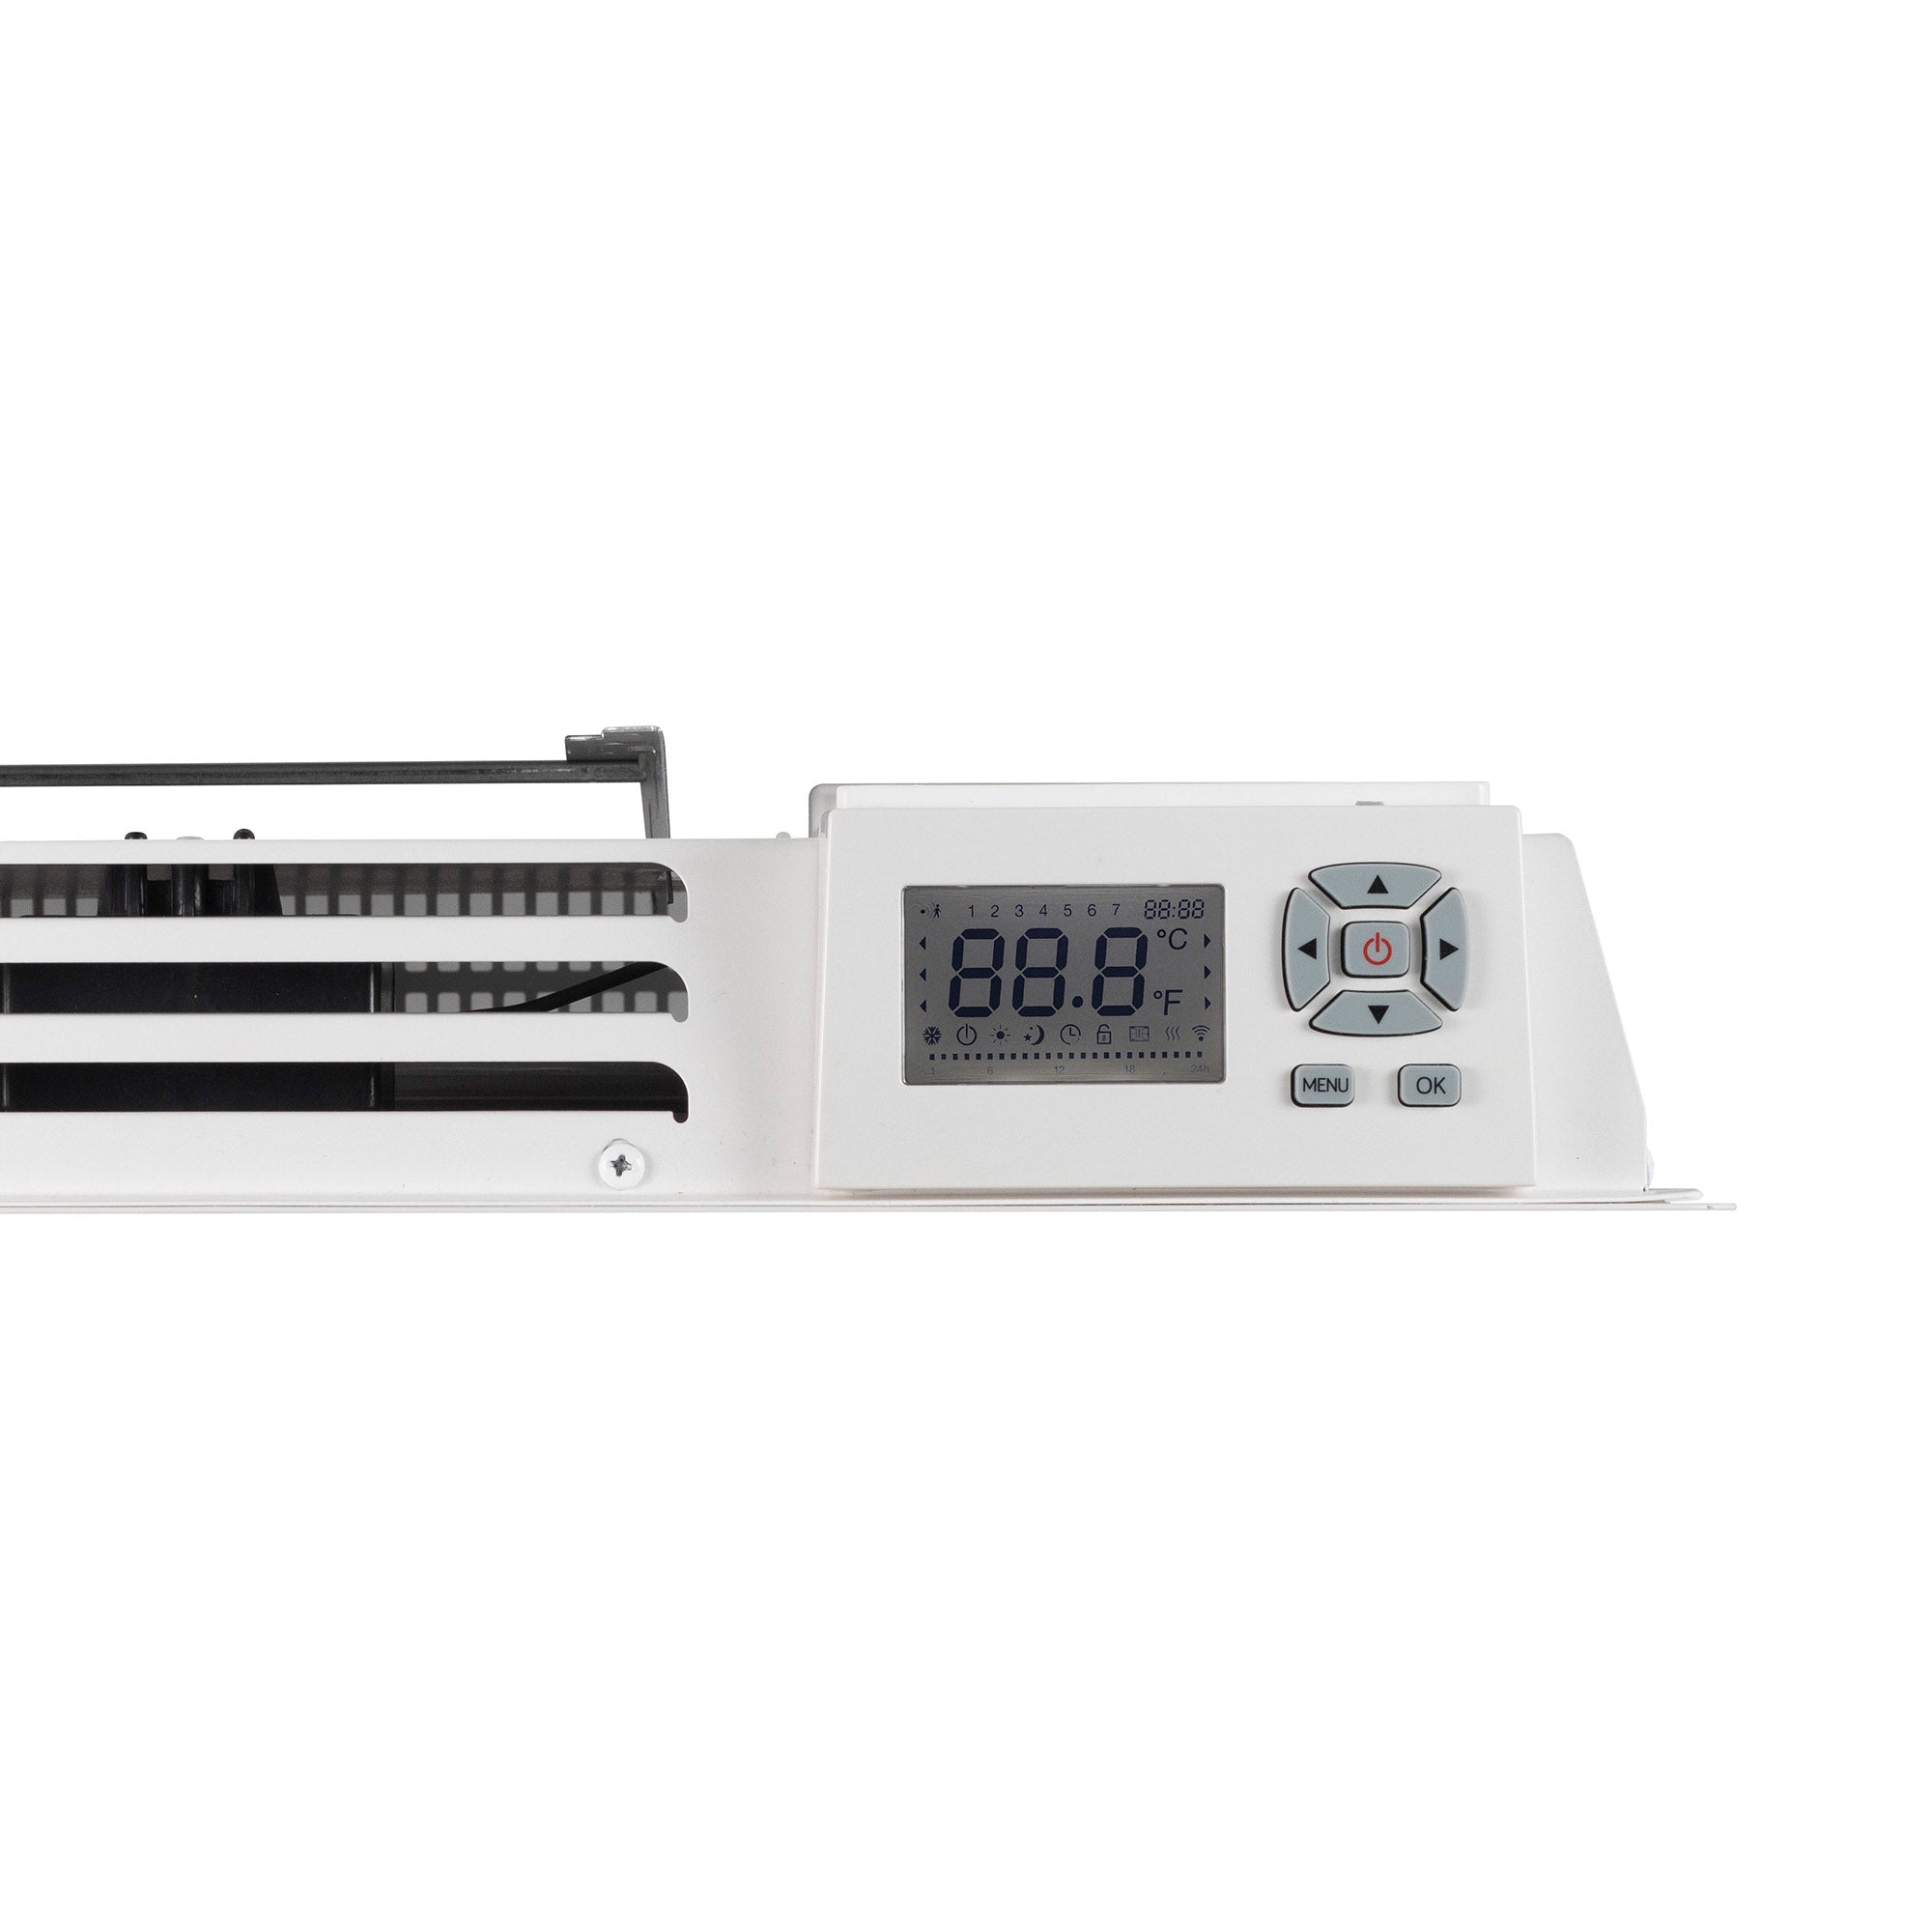 Radiator de perete max 1500 W Zep Home Premium senzor geam deschis, protectie anti-inghet